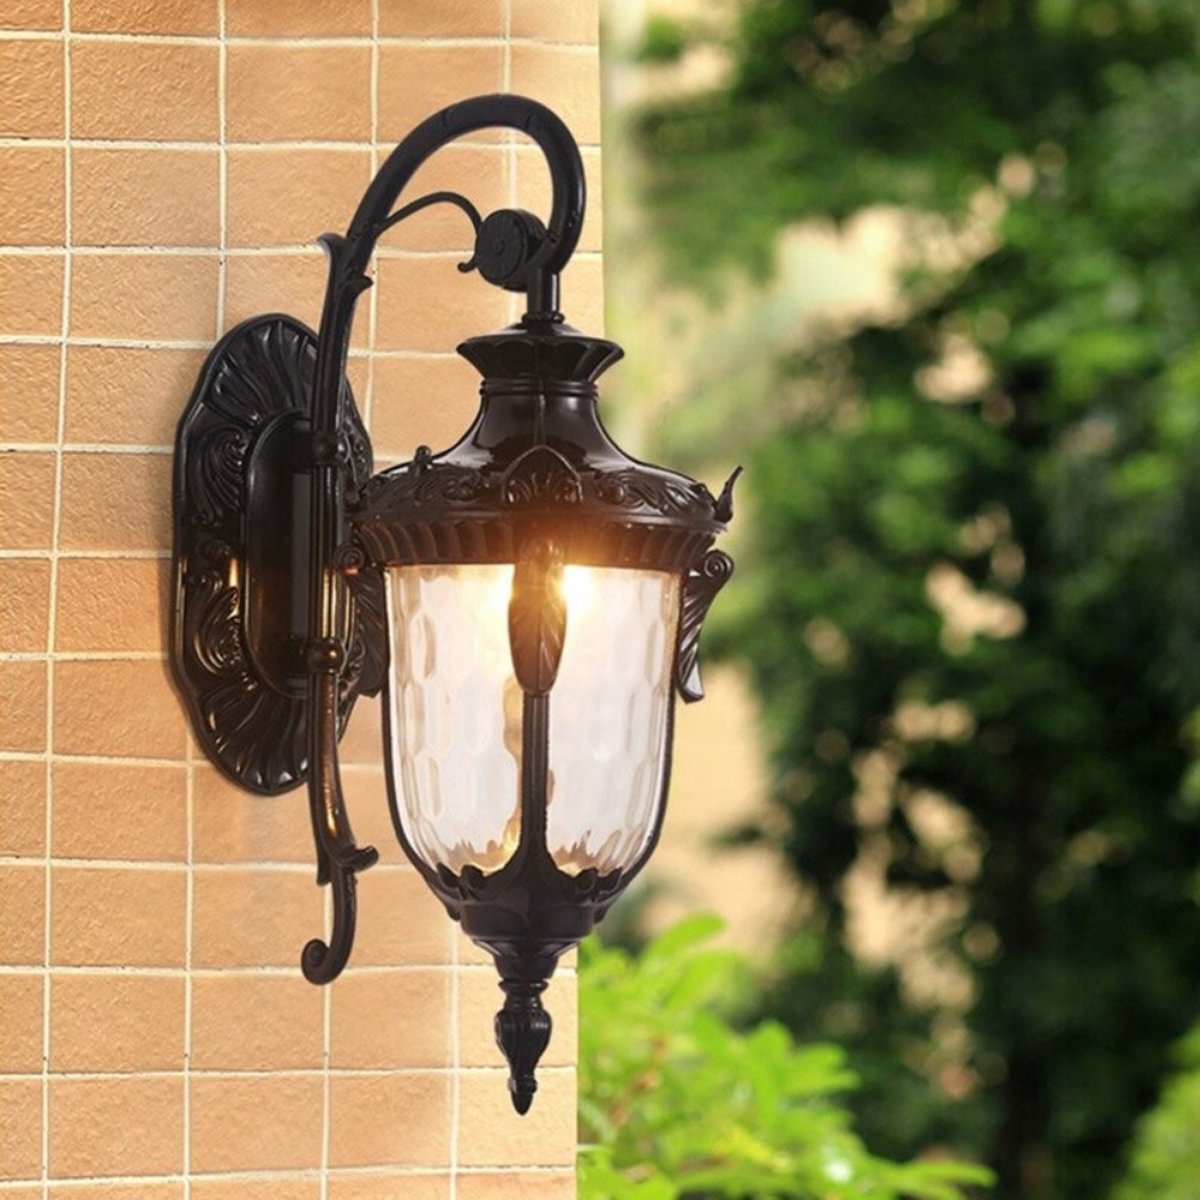 Manzibo Outdoor Wandlamp - Buitenlamp - Vintage Tuinlamp - Buitenlampen - Hanglamp - Retro Wandlamp - LED - E27 - Muurlamp - Zwart